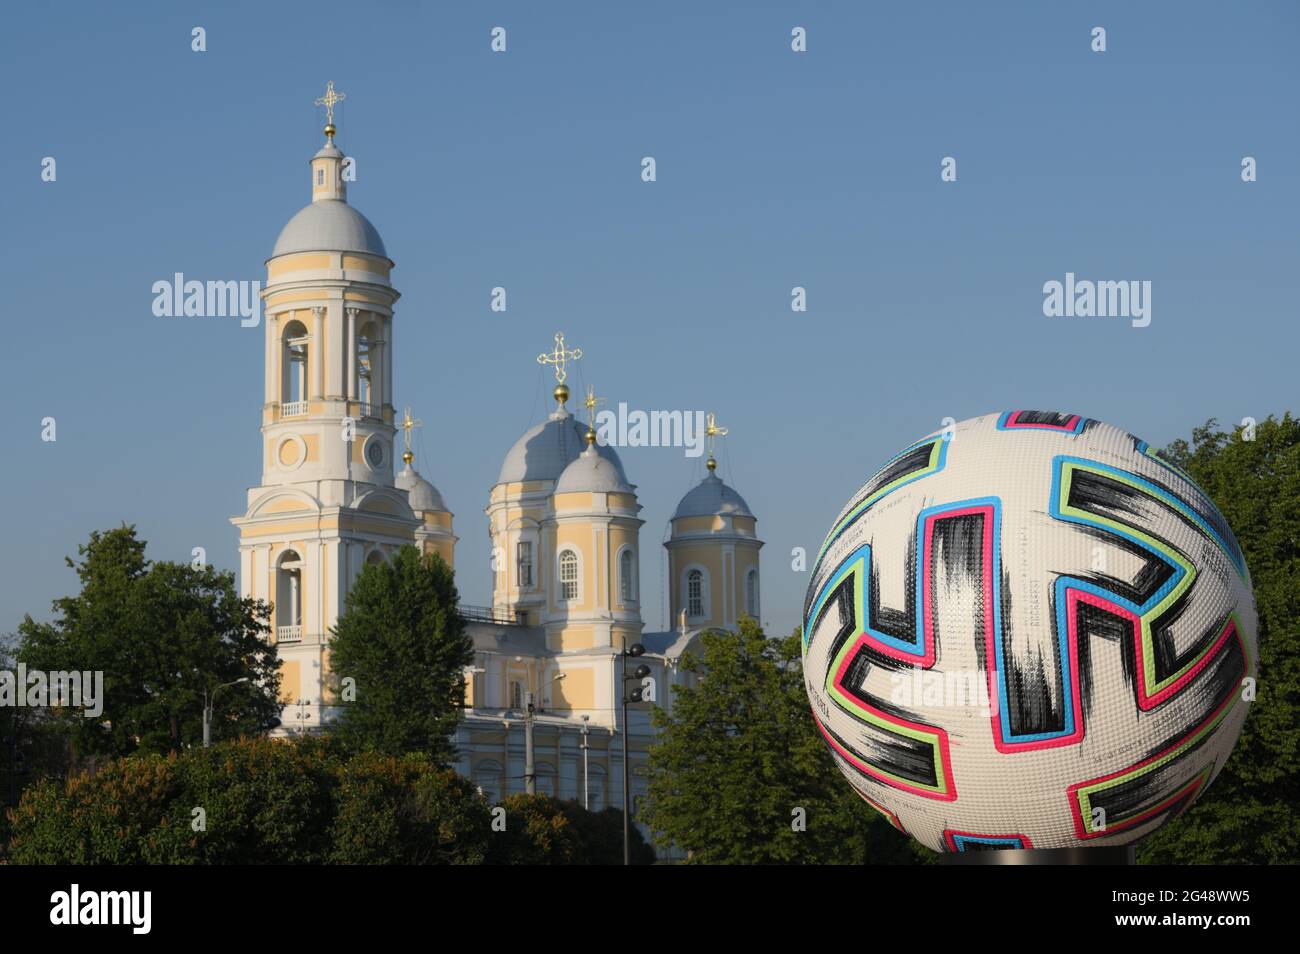 Pallone ufficiale del campionato europeo di calcio UEFA EURO 2020 a San Pietroburgo, Russia contro la cattedrale di San Vladimir Foto Stock